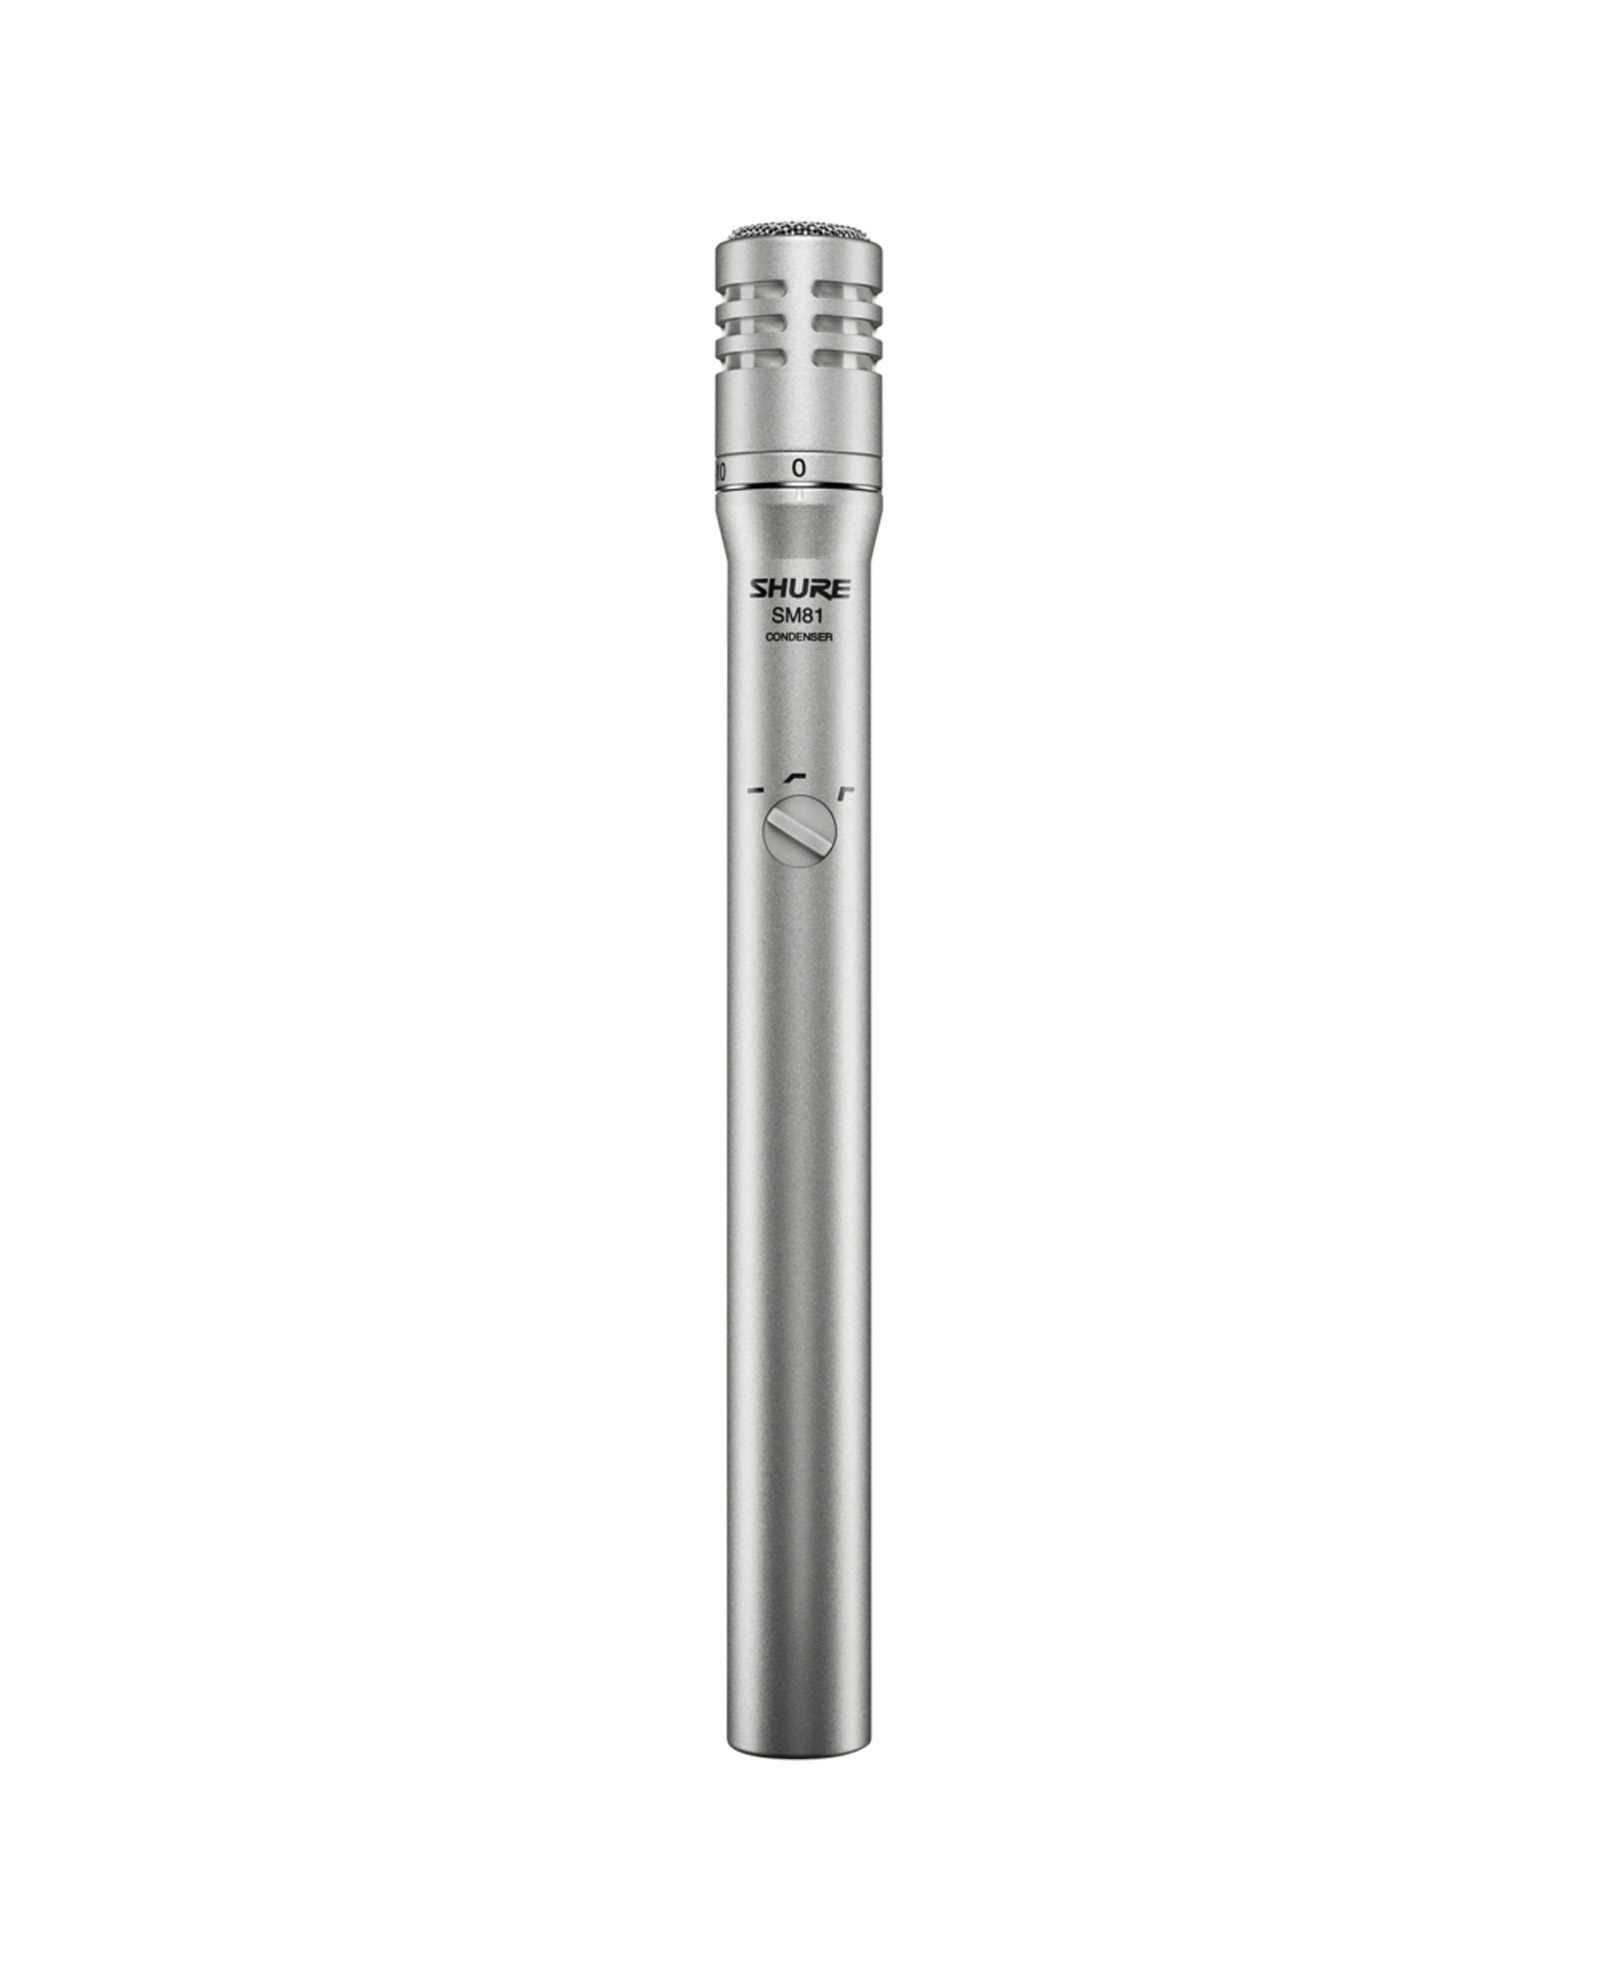 Shure Sm81 Condenser Instrument Microphone 1